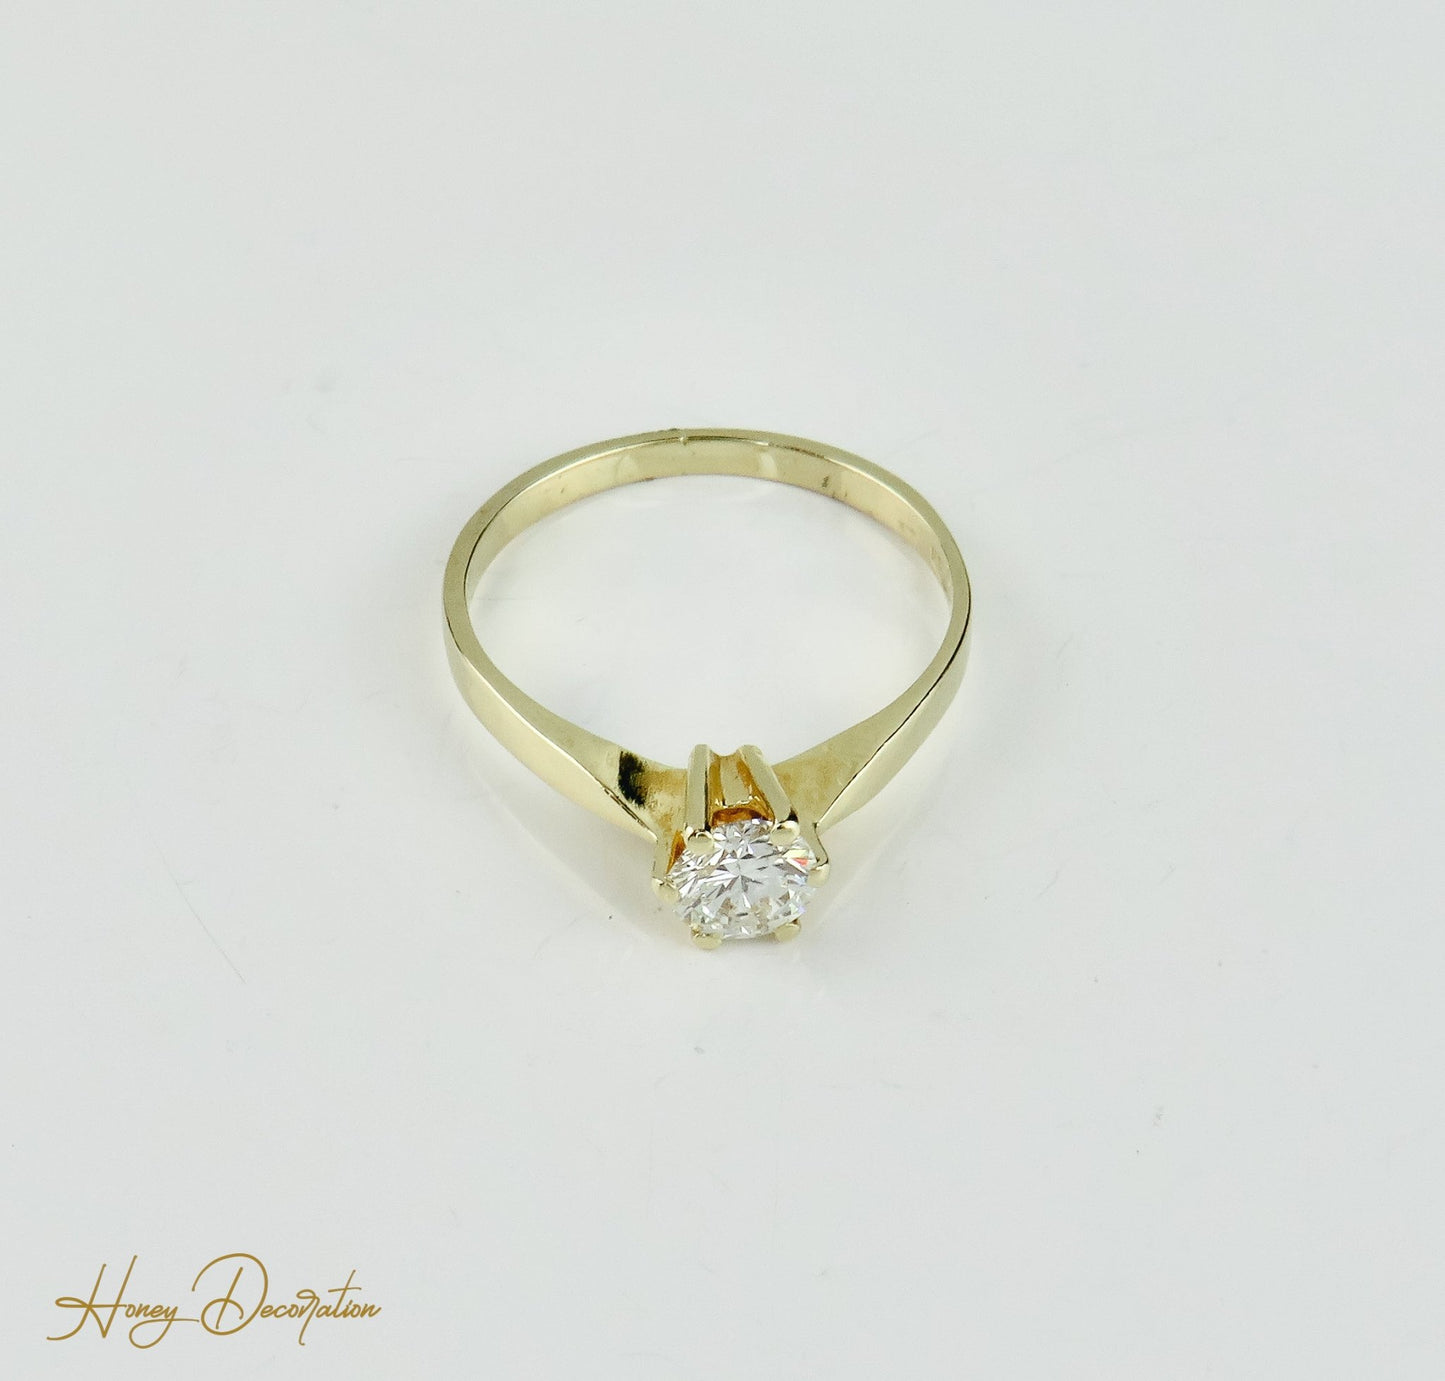 Süßer Verlobungs-Ring aus 750 Gold mit Brillant-Solitär - Honey Decoration